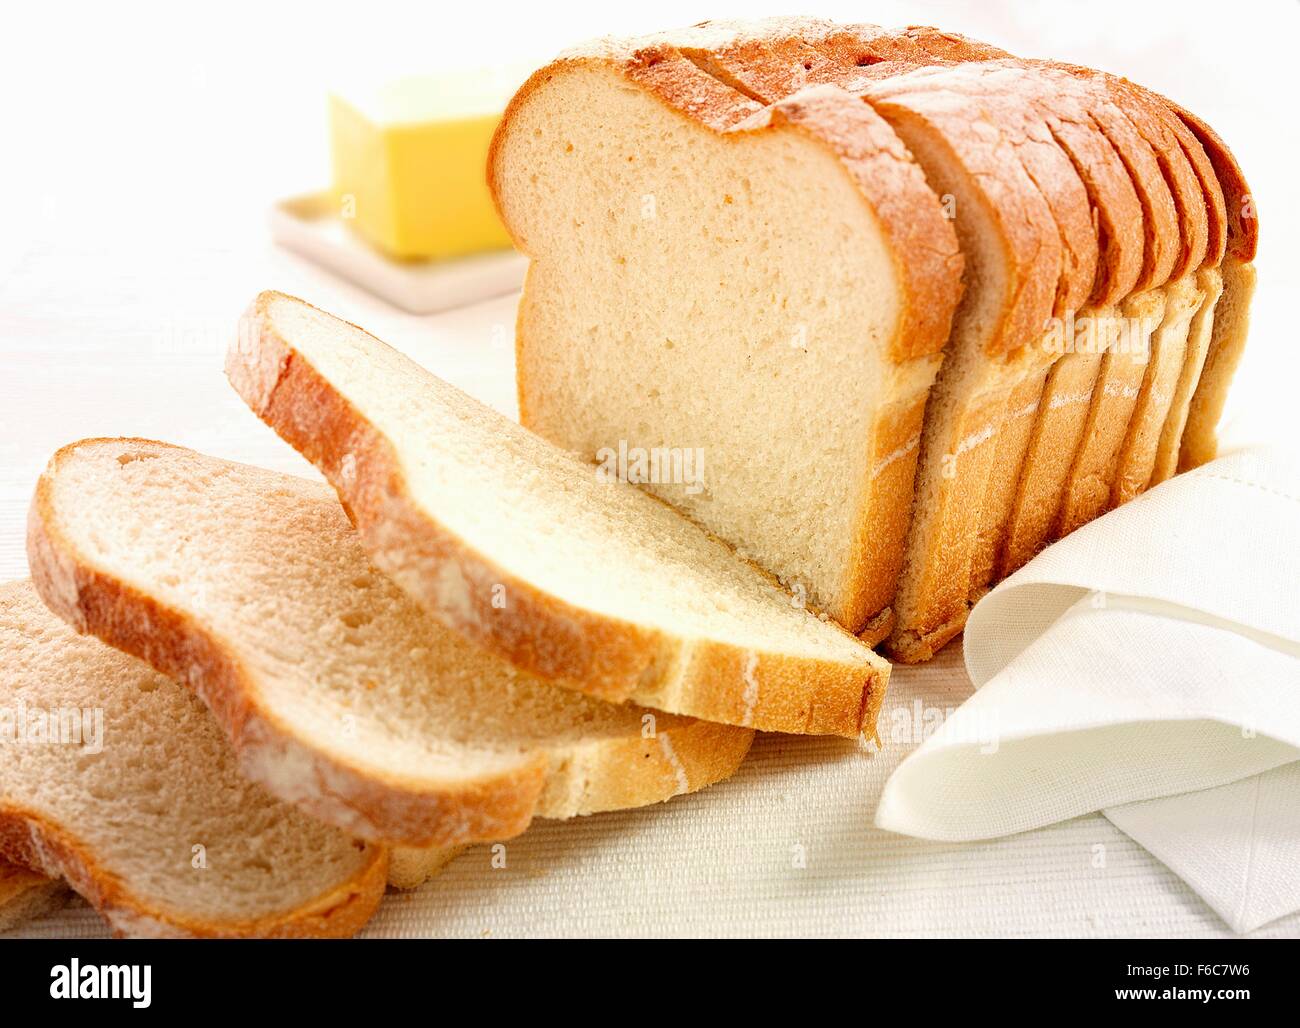 Le pain coupé en tranches avec une noix de beurre Banque D'Images